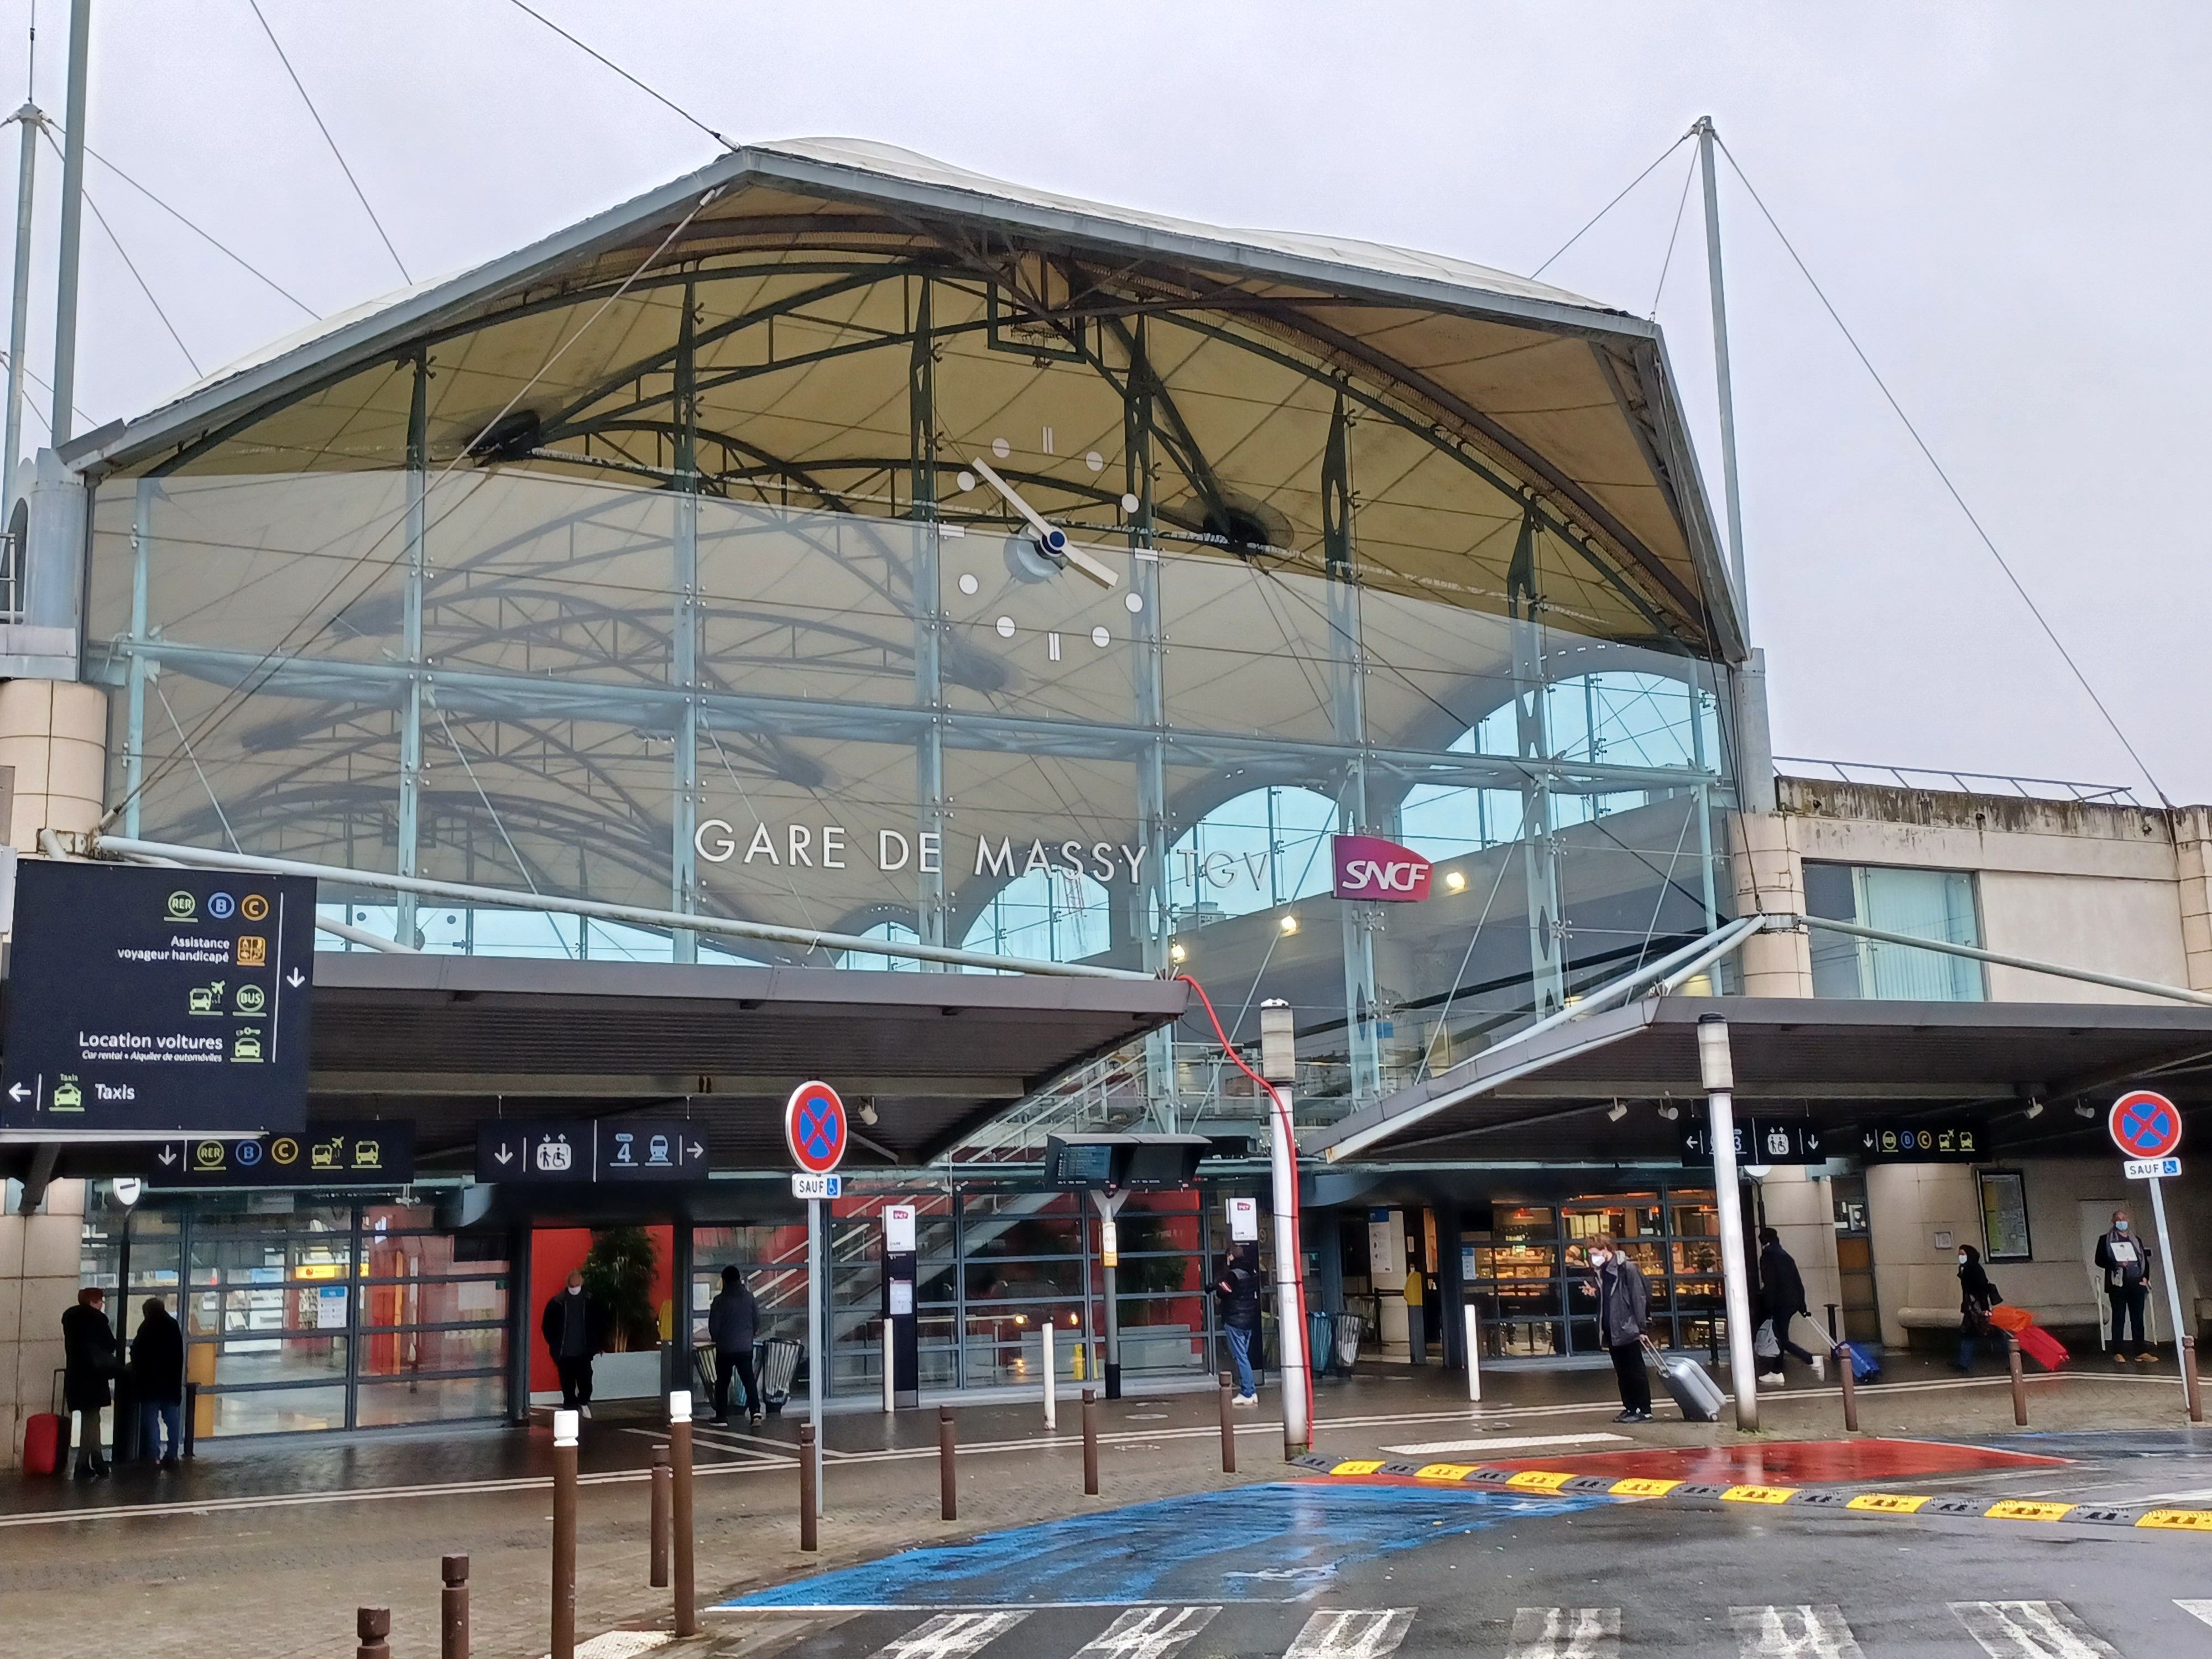 Le suspect agressait sexuellement des jeunes femmes dans le secteur de la gare de Massy. LP/Cécile Chevallier